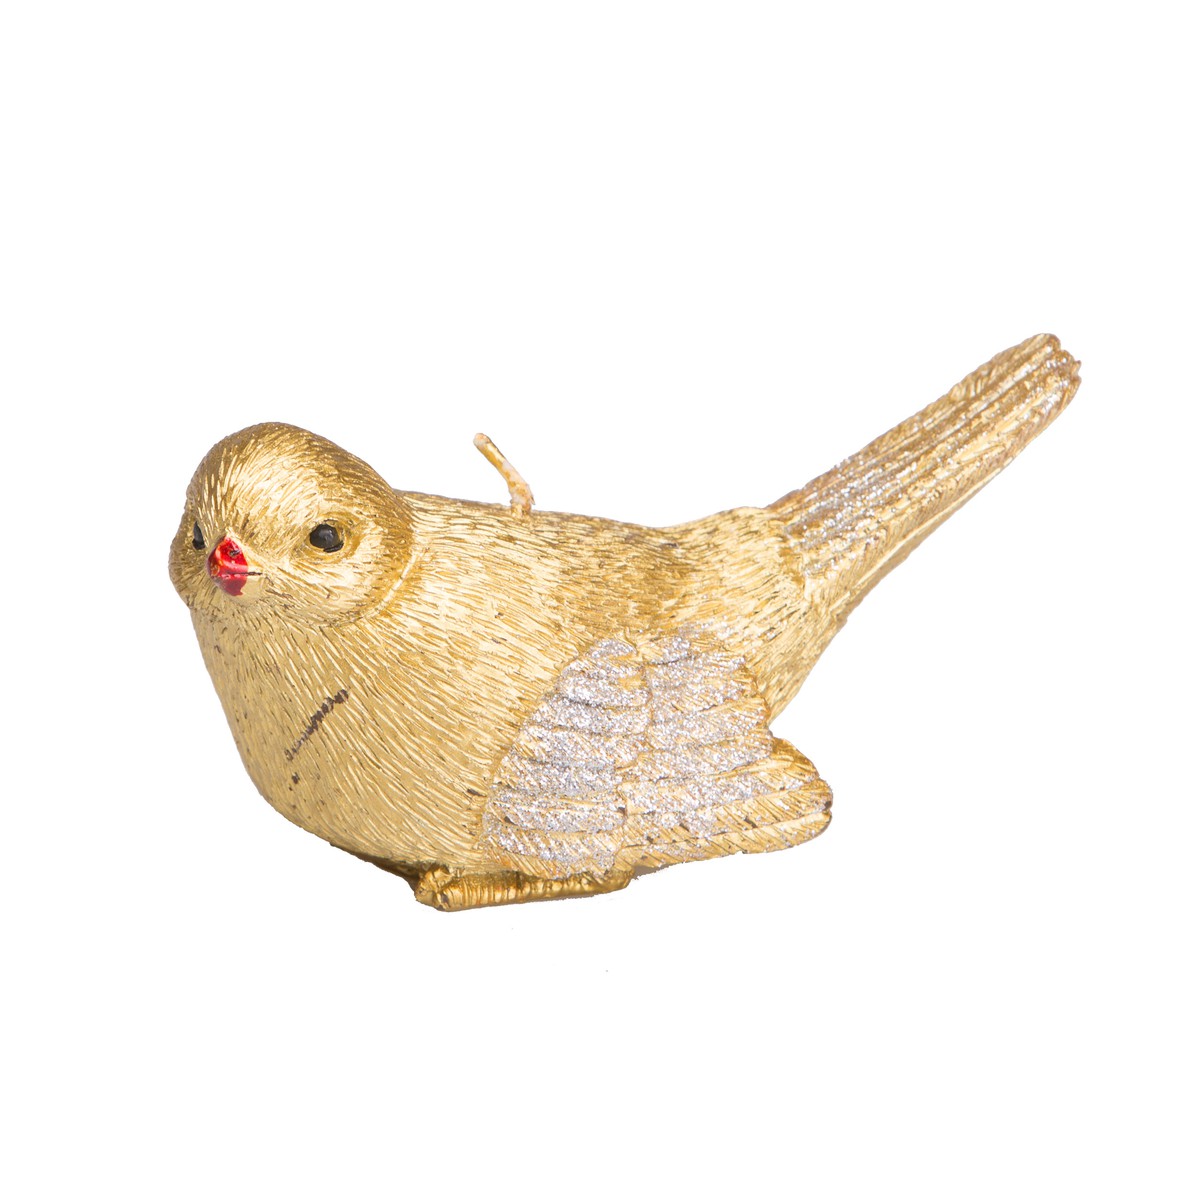   Bougie Oiseau Jaune or 12.5x5.6x6.9cm